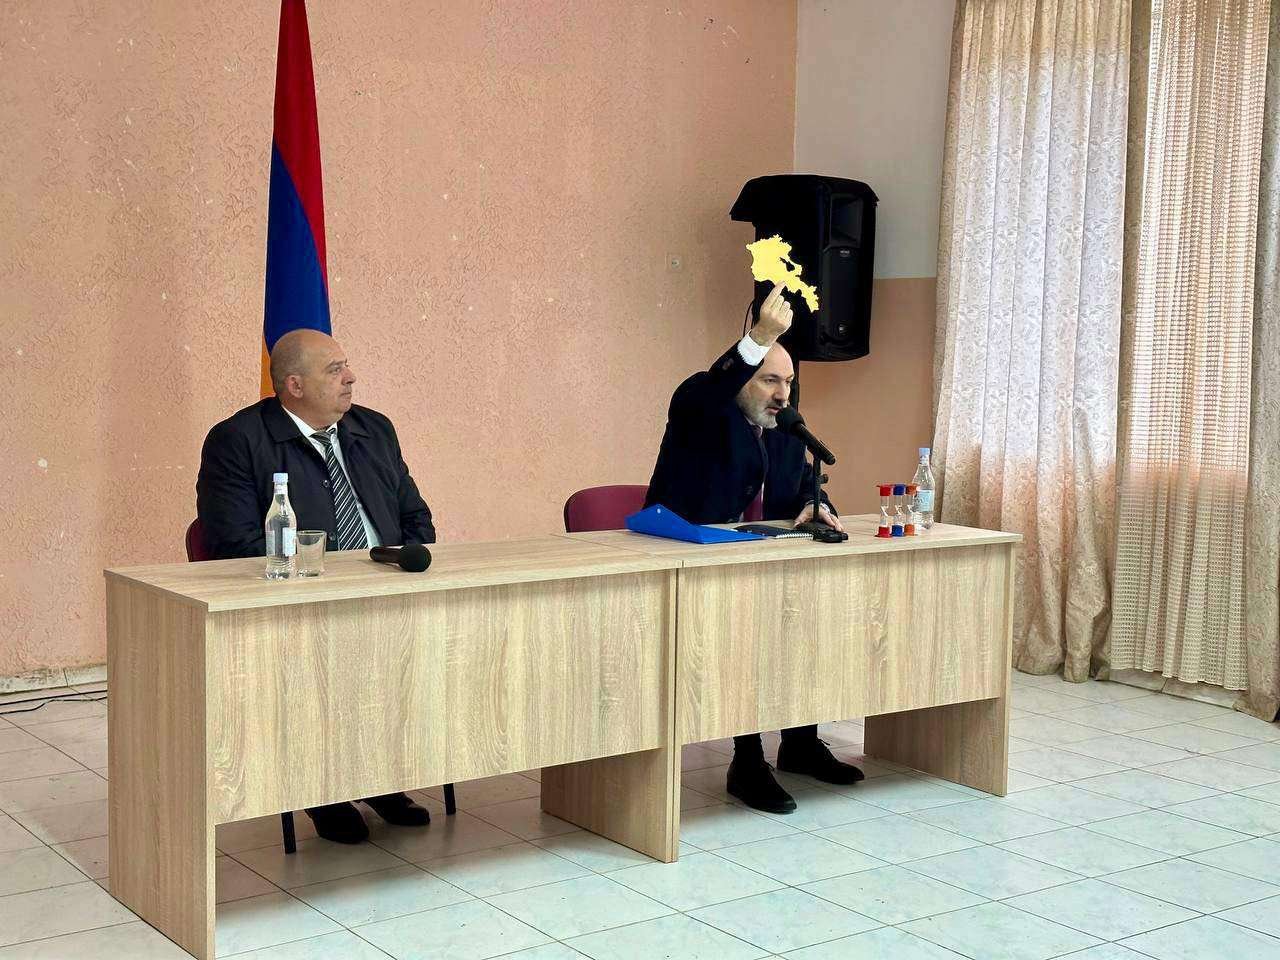 Հայաստանի այն ուրվագիծը, որ ցույց եմ տվել ասուլիսին, ցույց եմ տվել նաև այստեղ. Փաշինյանը՝ Տավուշի հանդիպման մասին